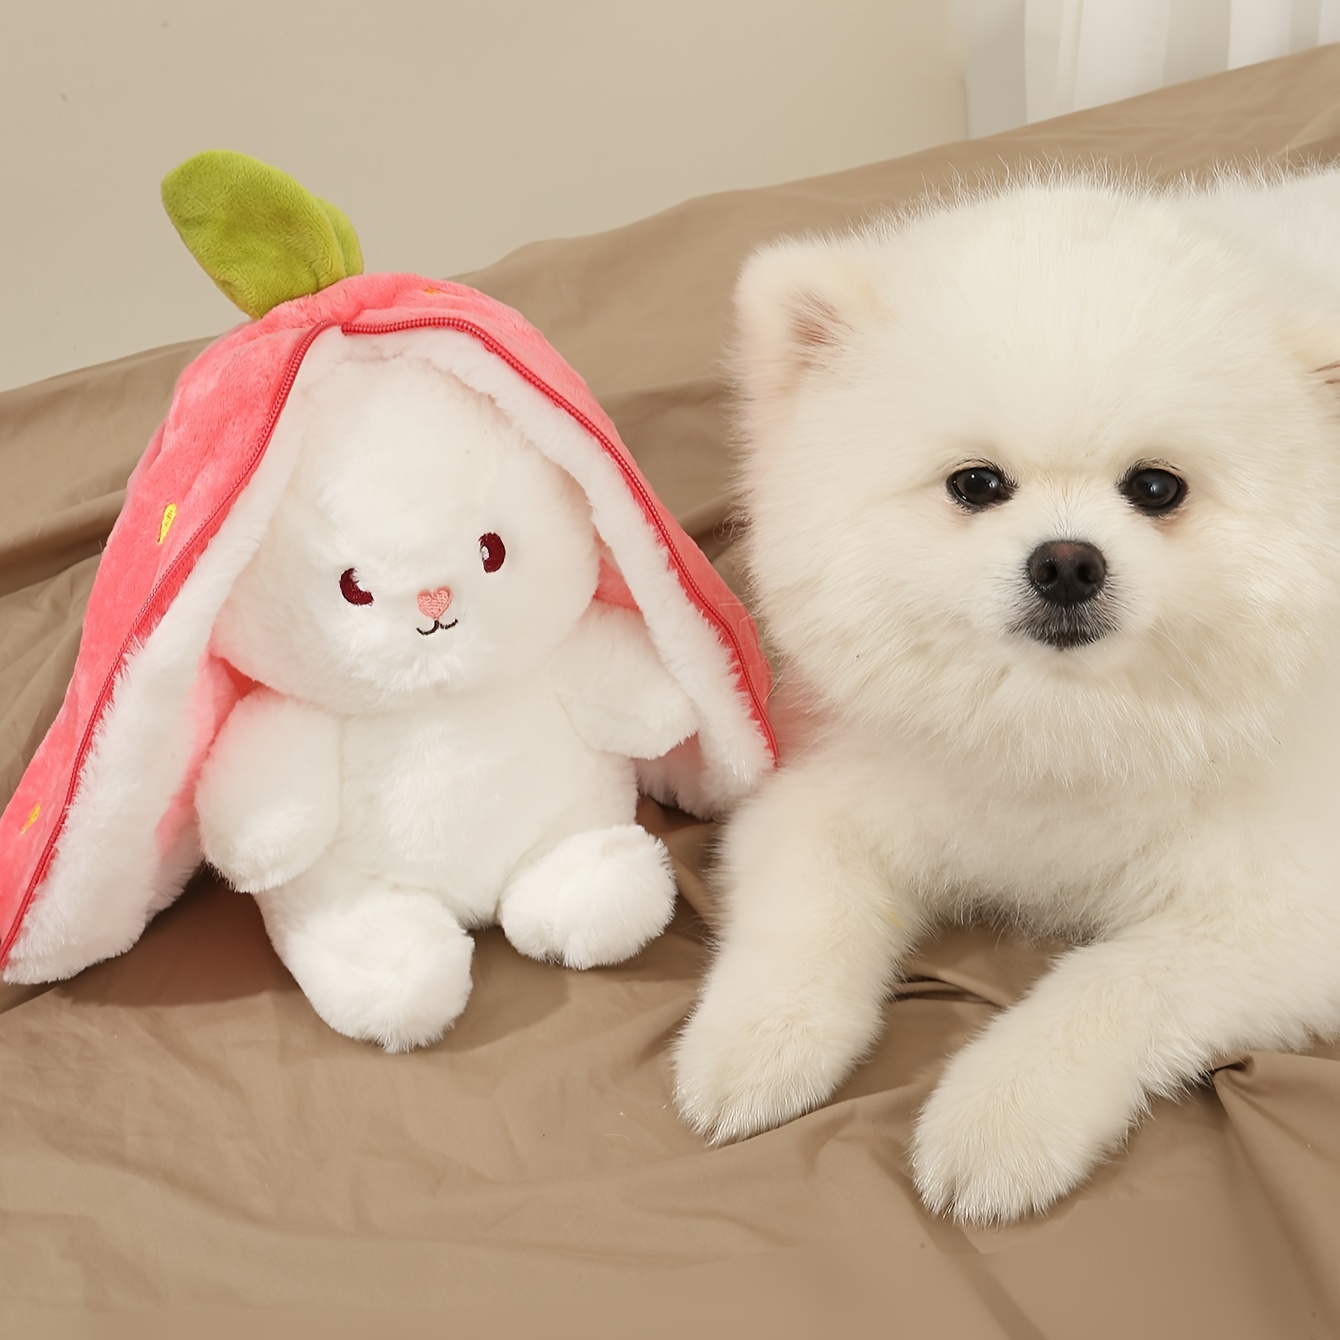 Pet Squeaky Plush Dog Toy, Plush Strawberry Dog Toy